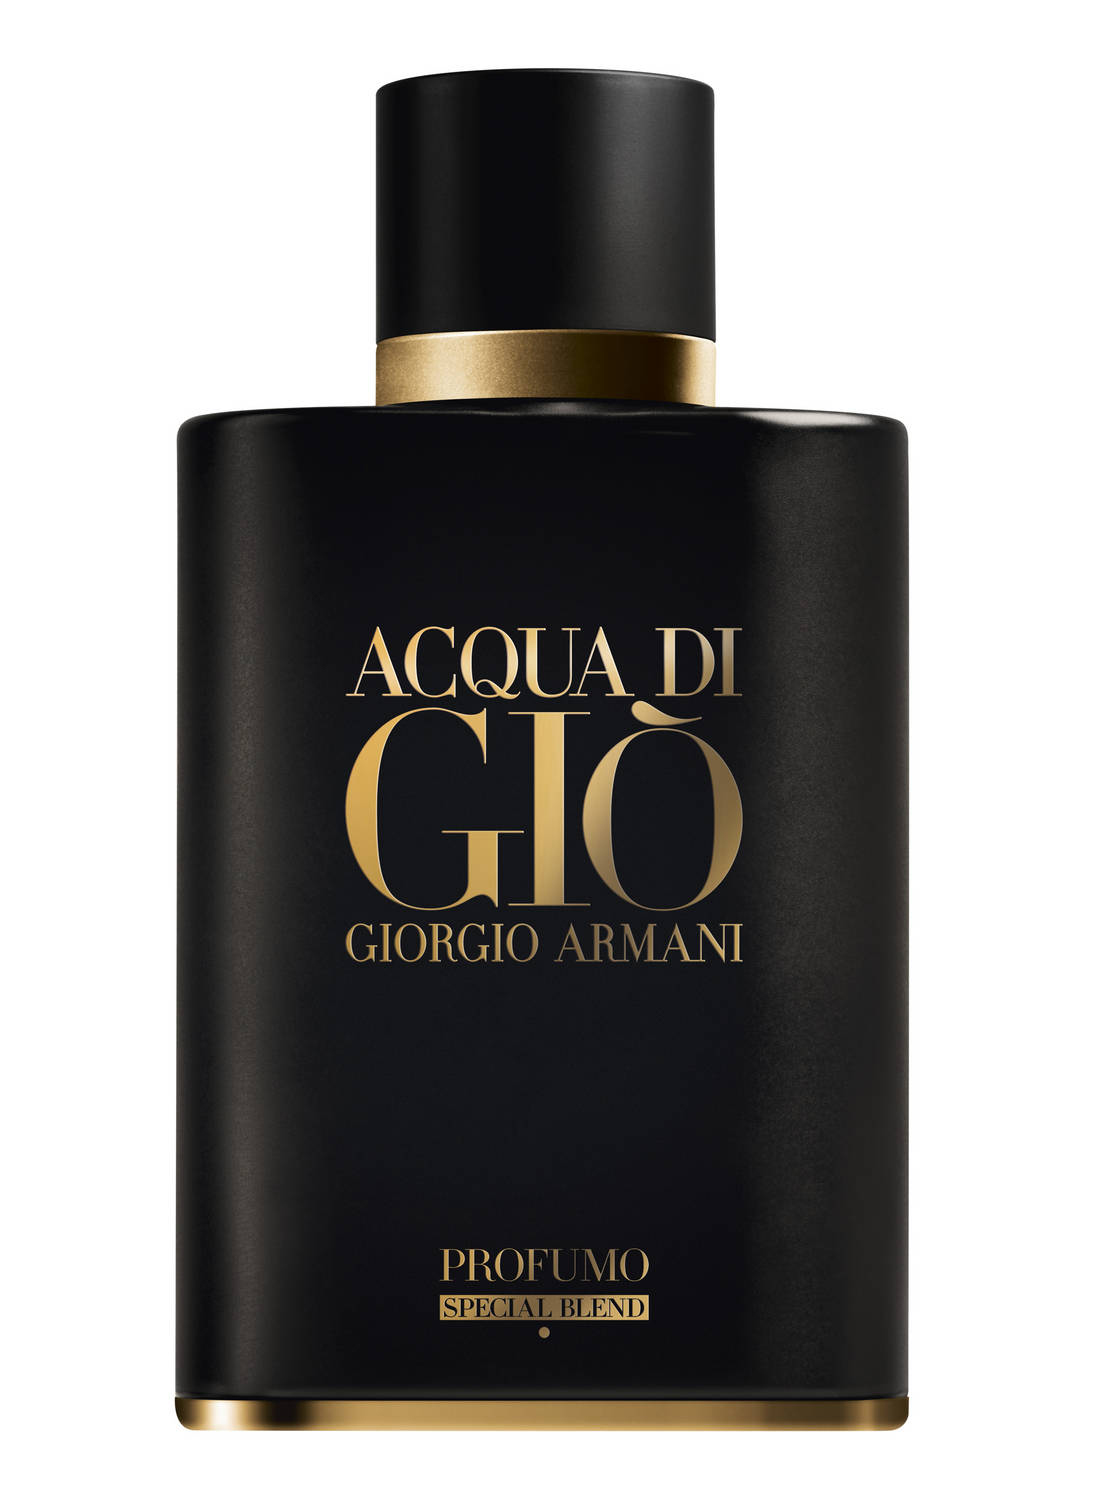 Acqua di Gio Profumo Special Blend Giorgio Armani Cologne - un nouveau